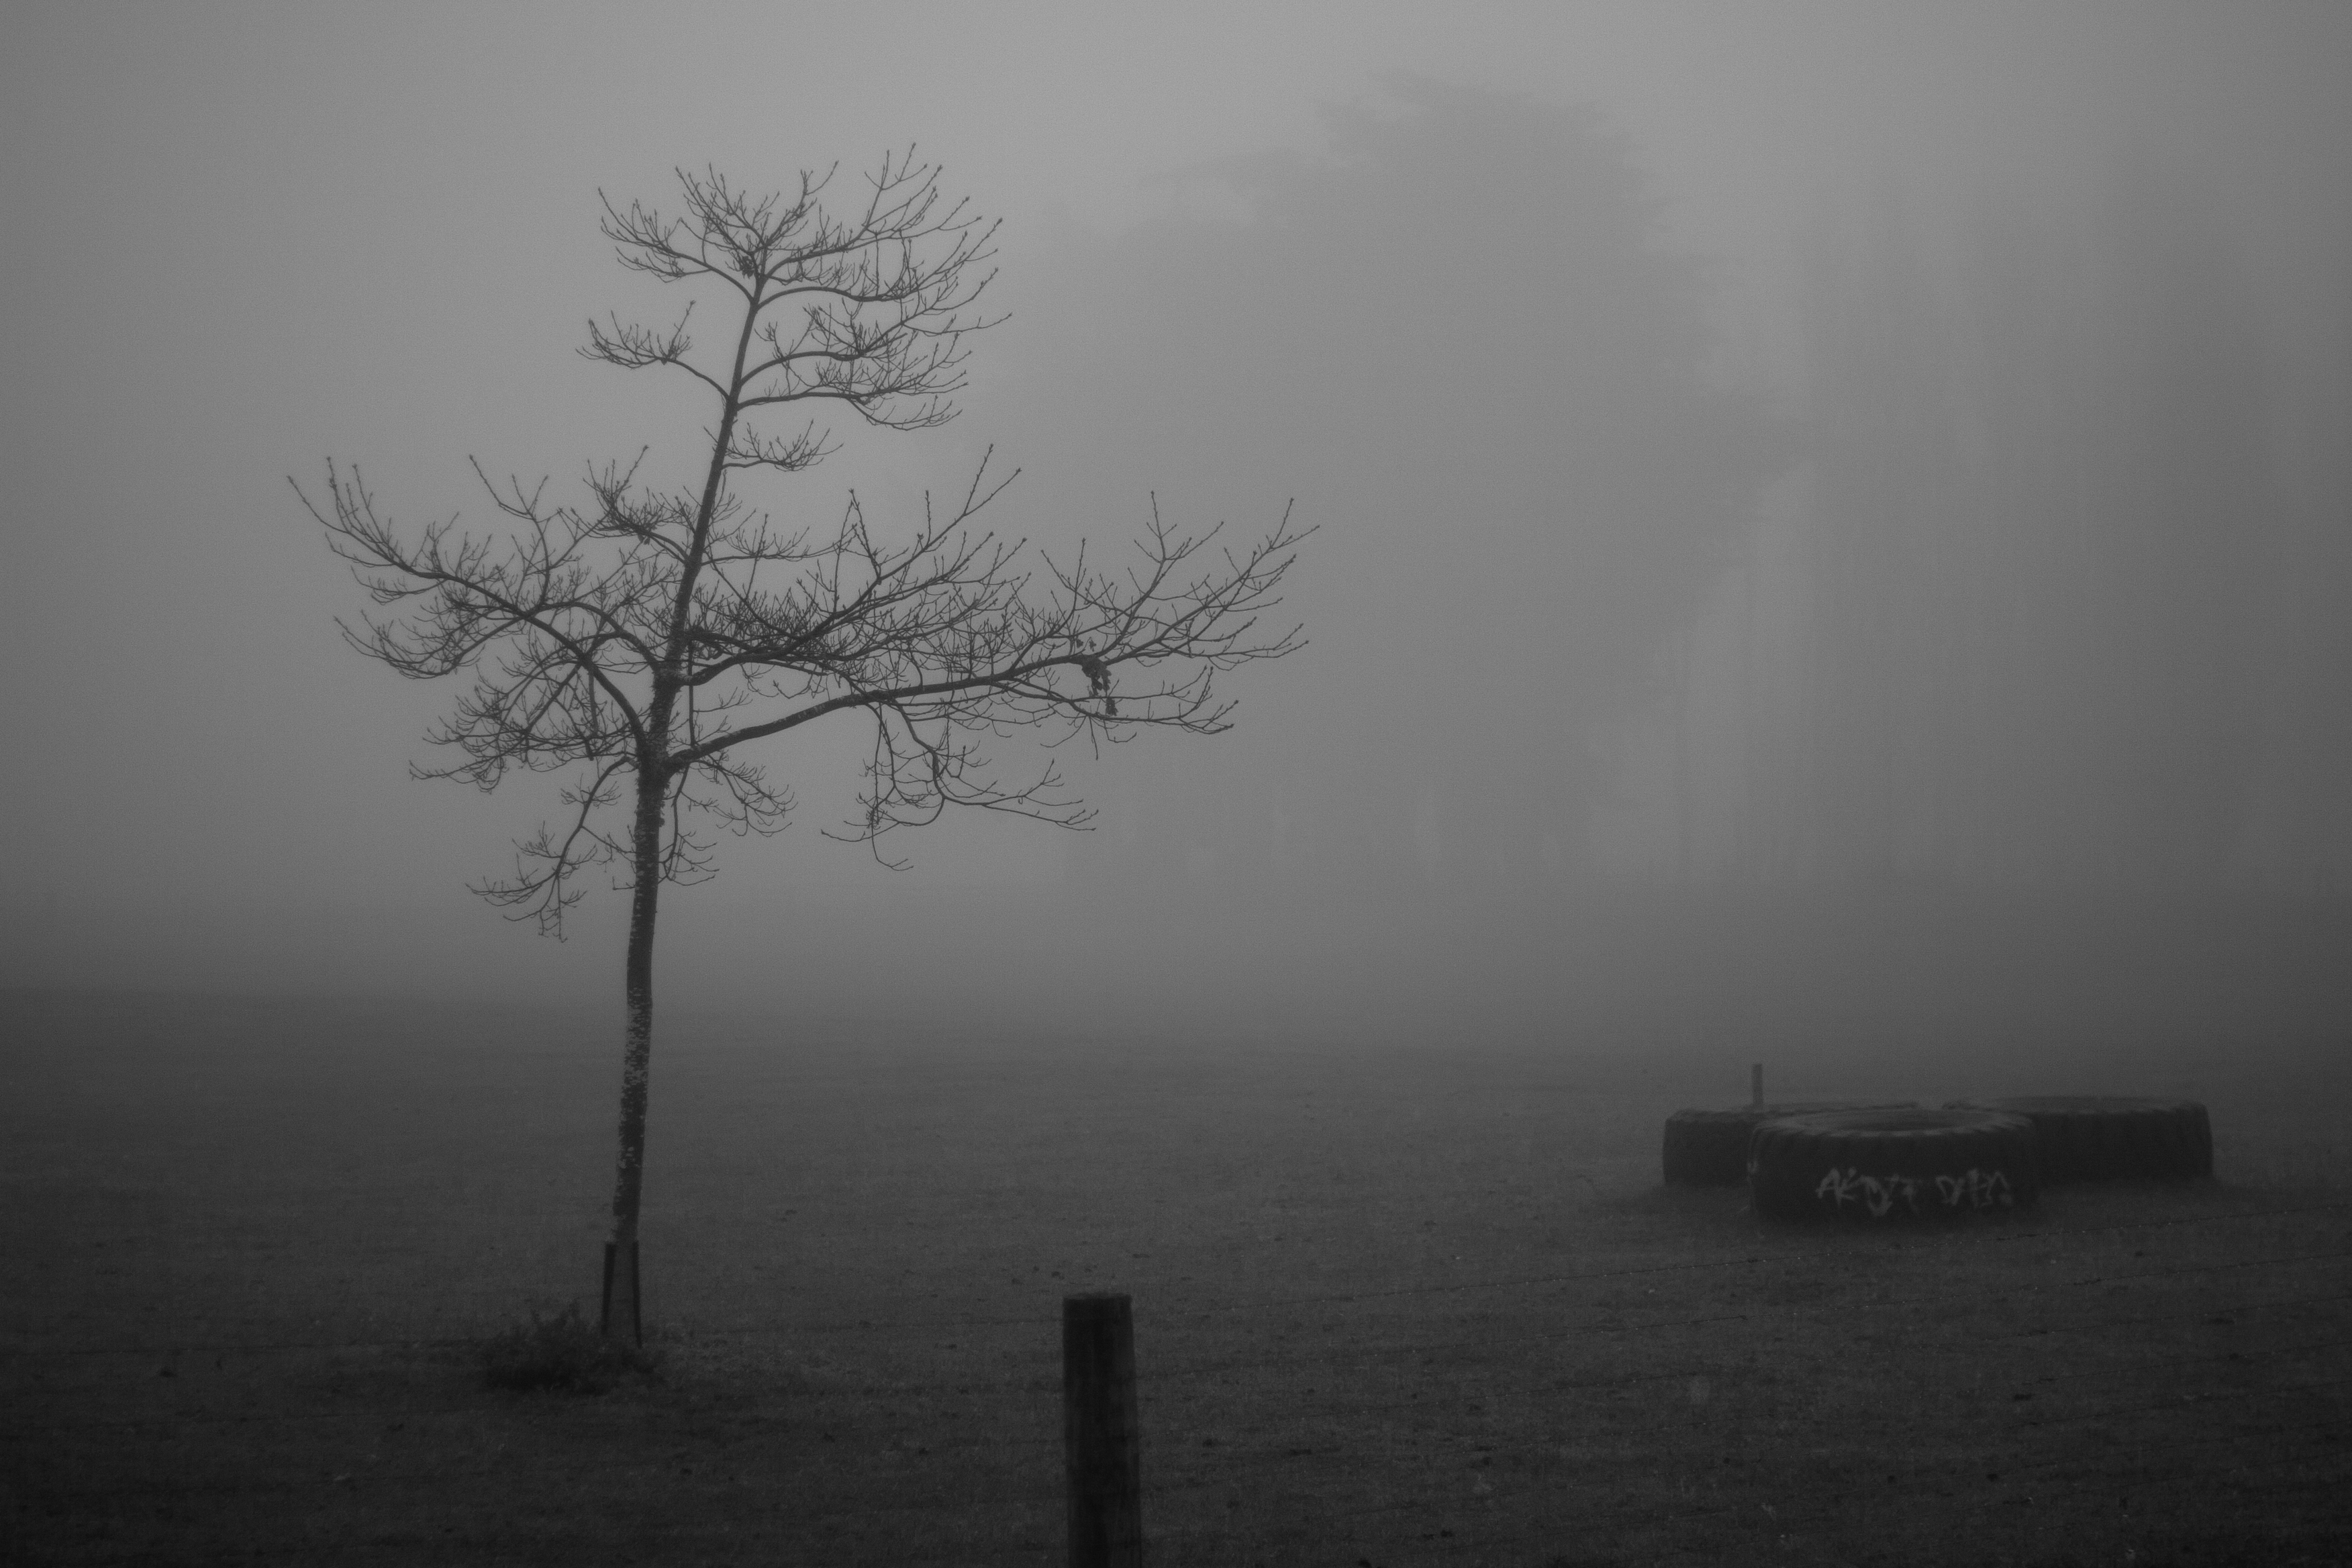 hidden in the mist